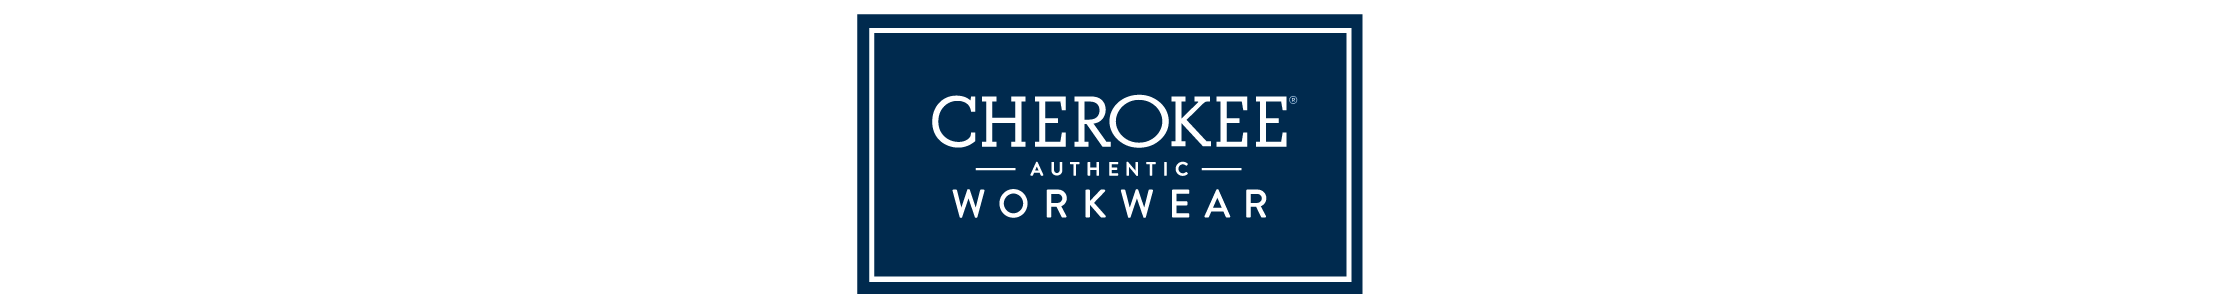 Workwear-Logo.png